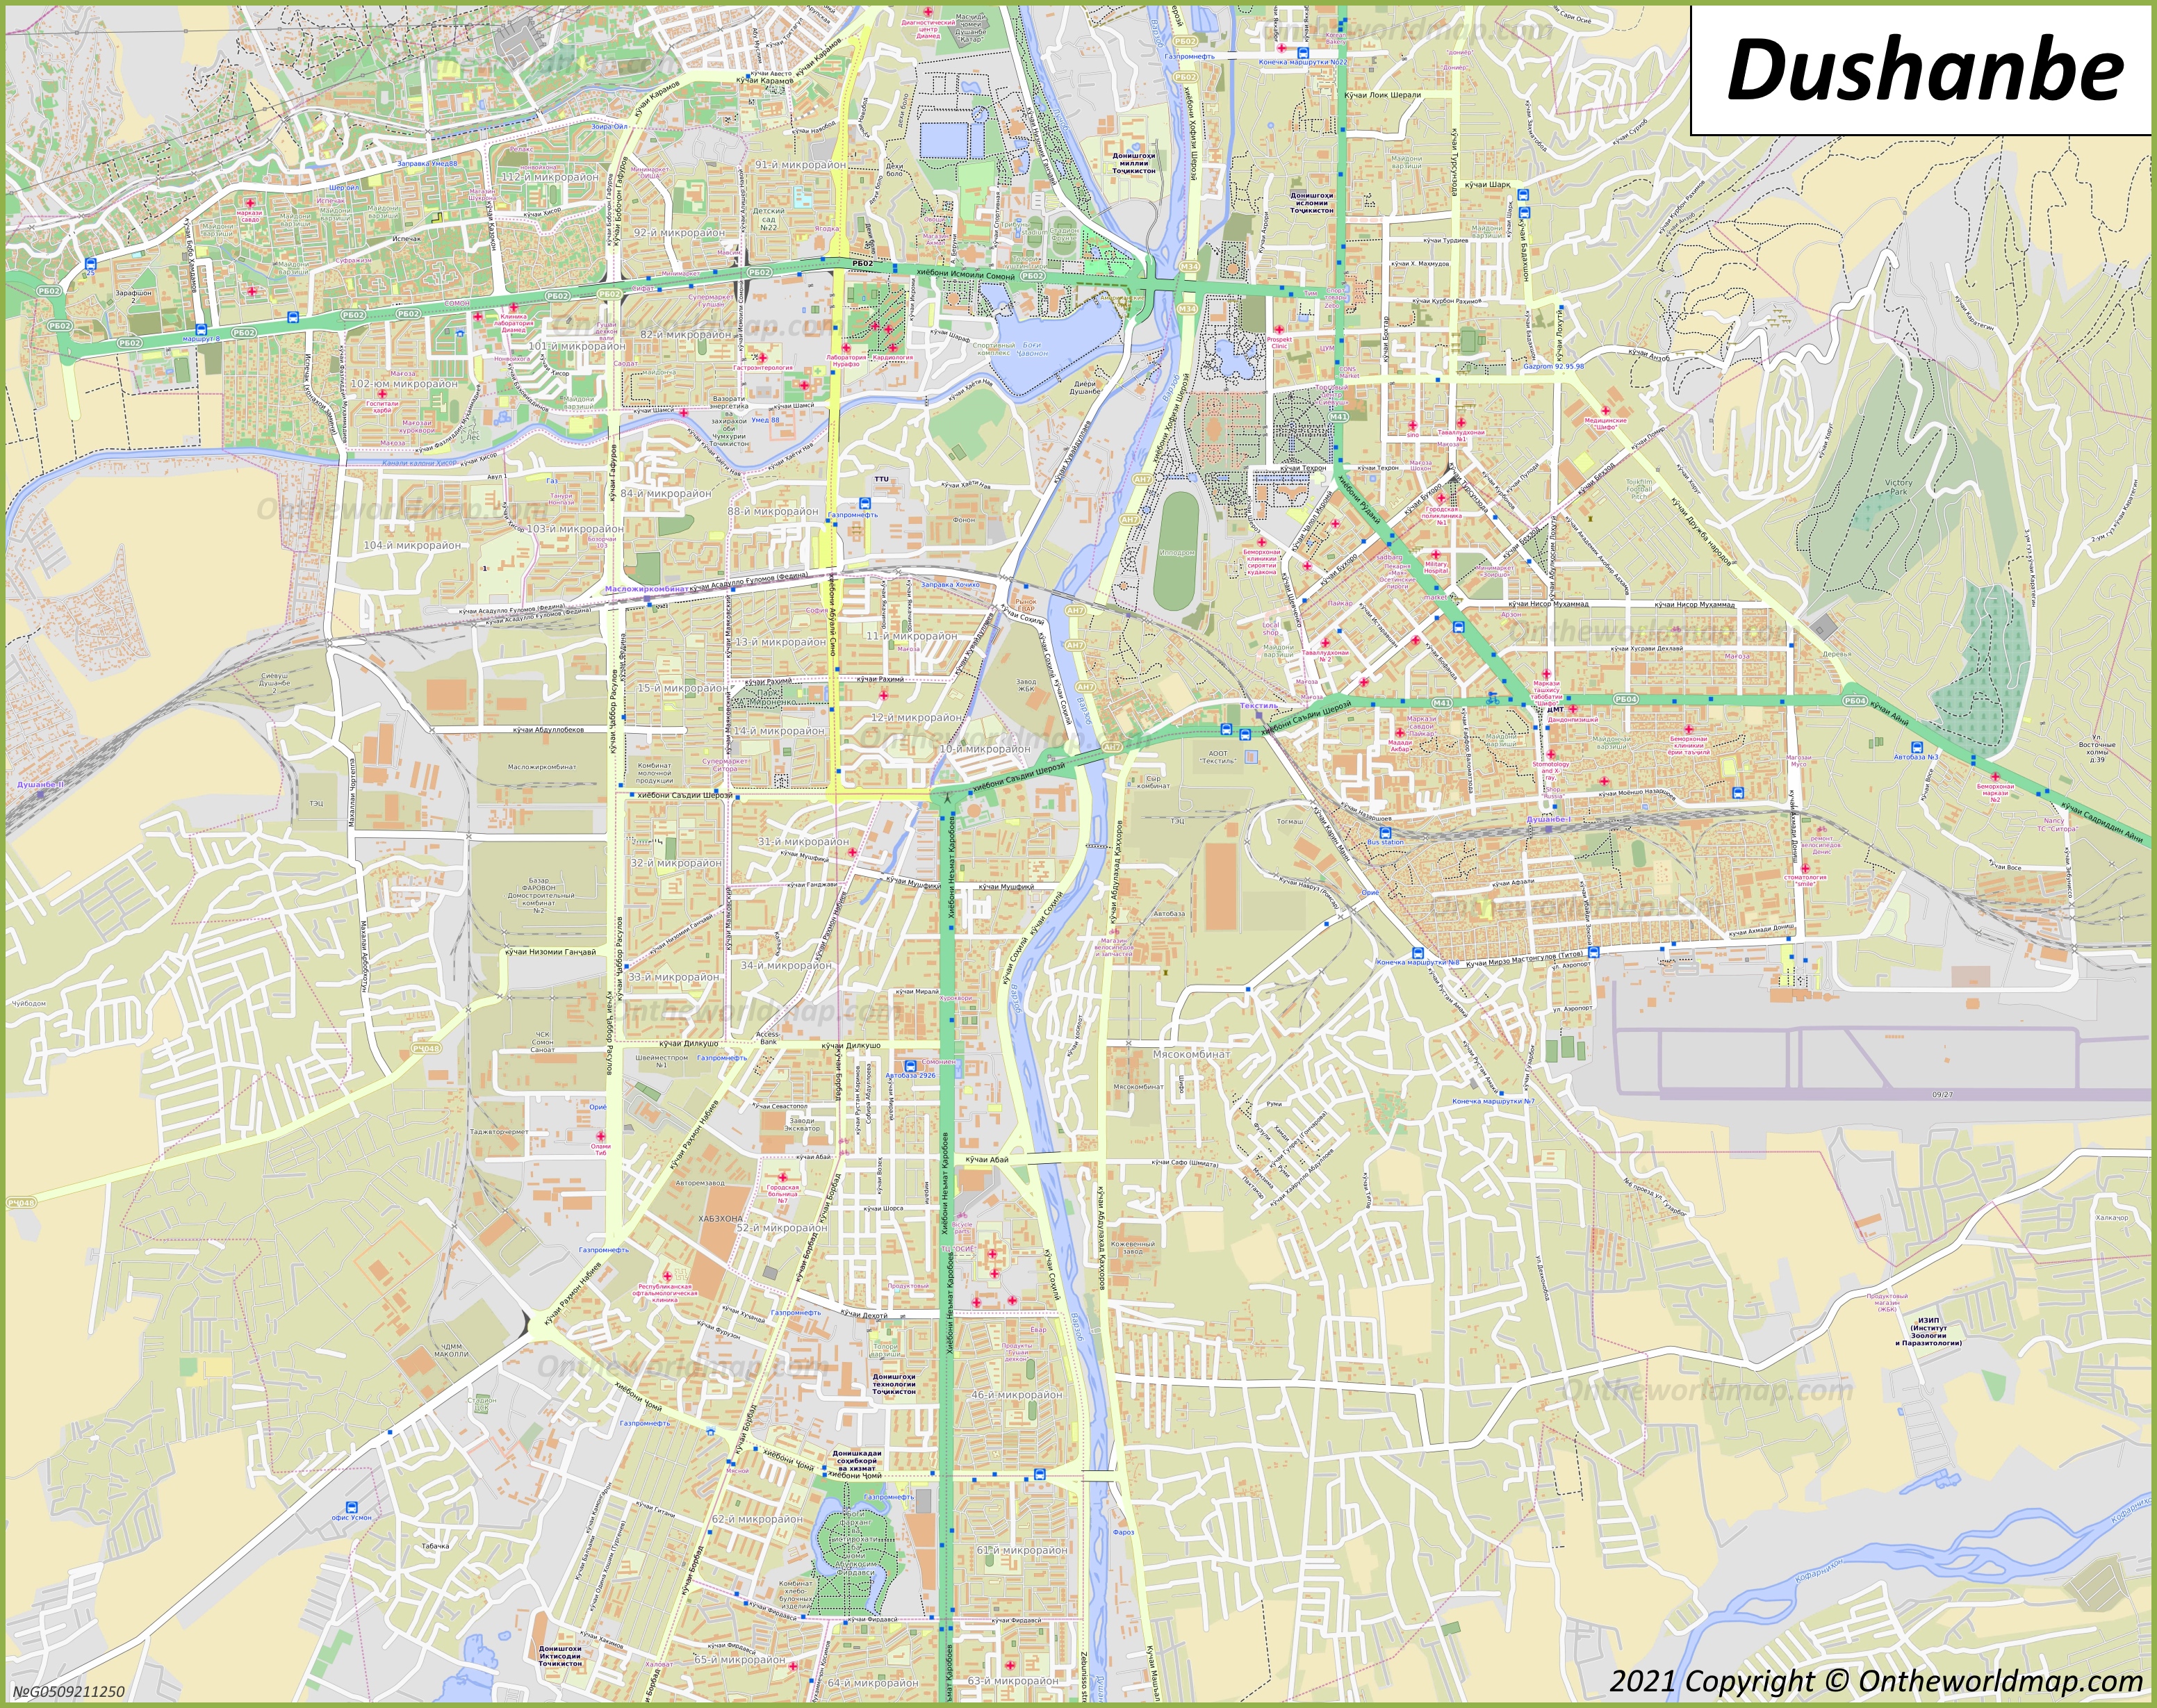 Map of Dushanbe